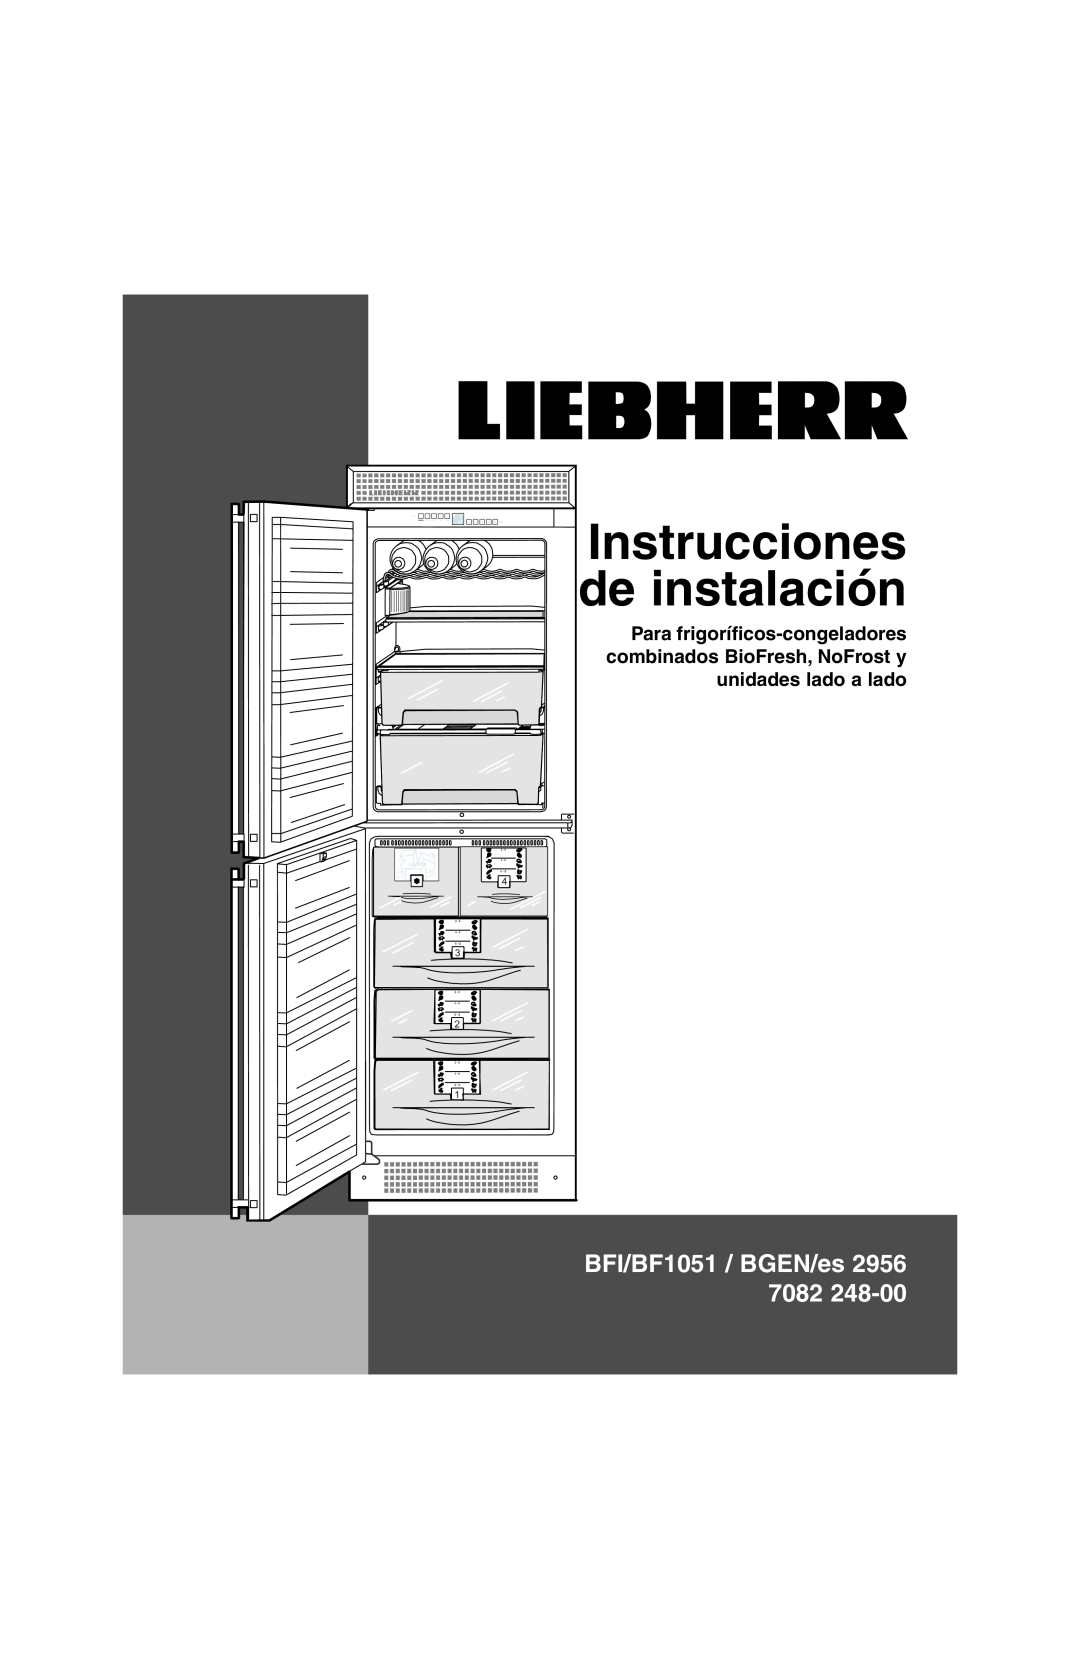 Liebherr BFI1051 installation instructions Instrucciones de instalación, BFI/BF1051 / BGEN/es 2956 7082 